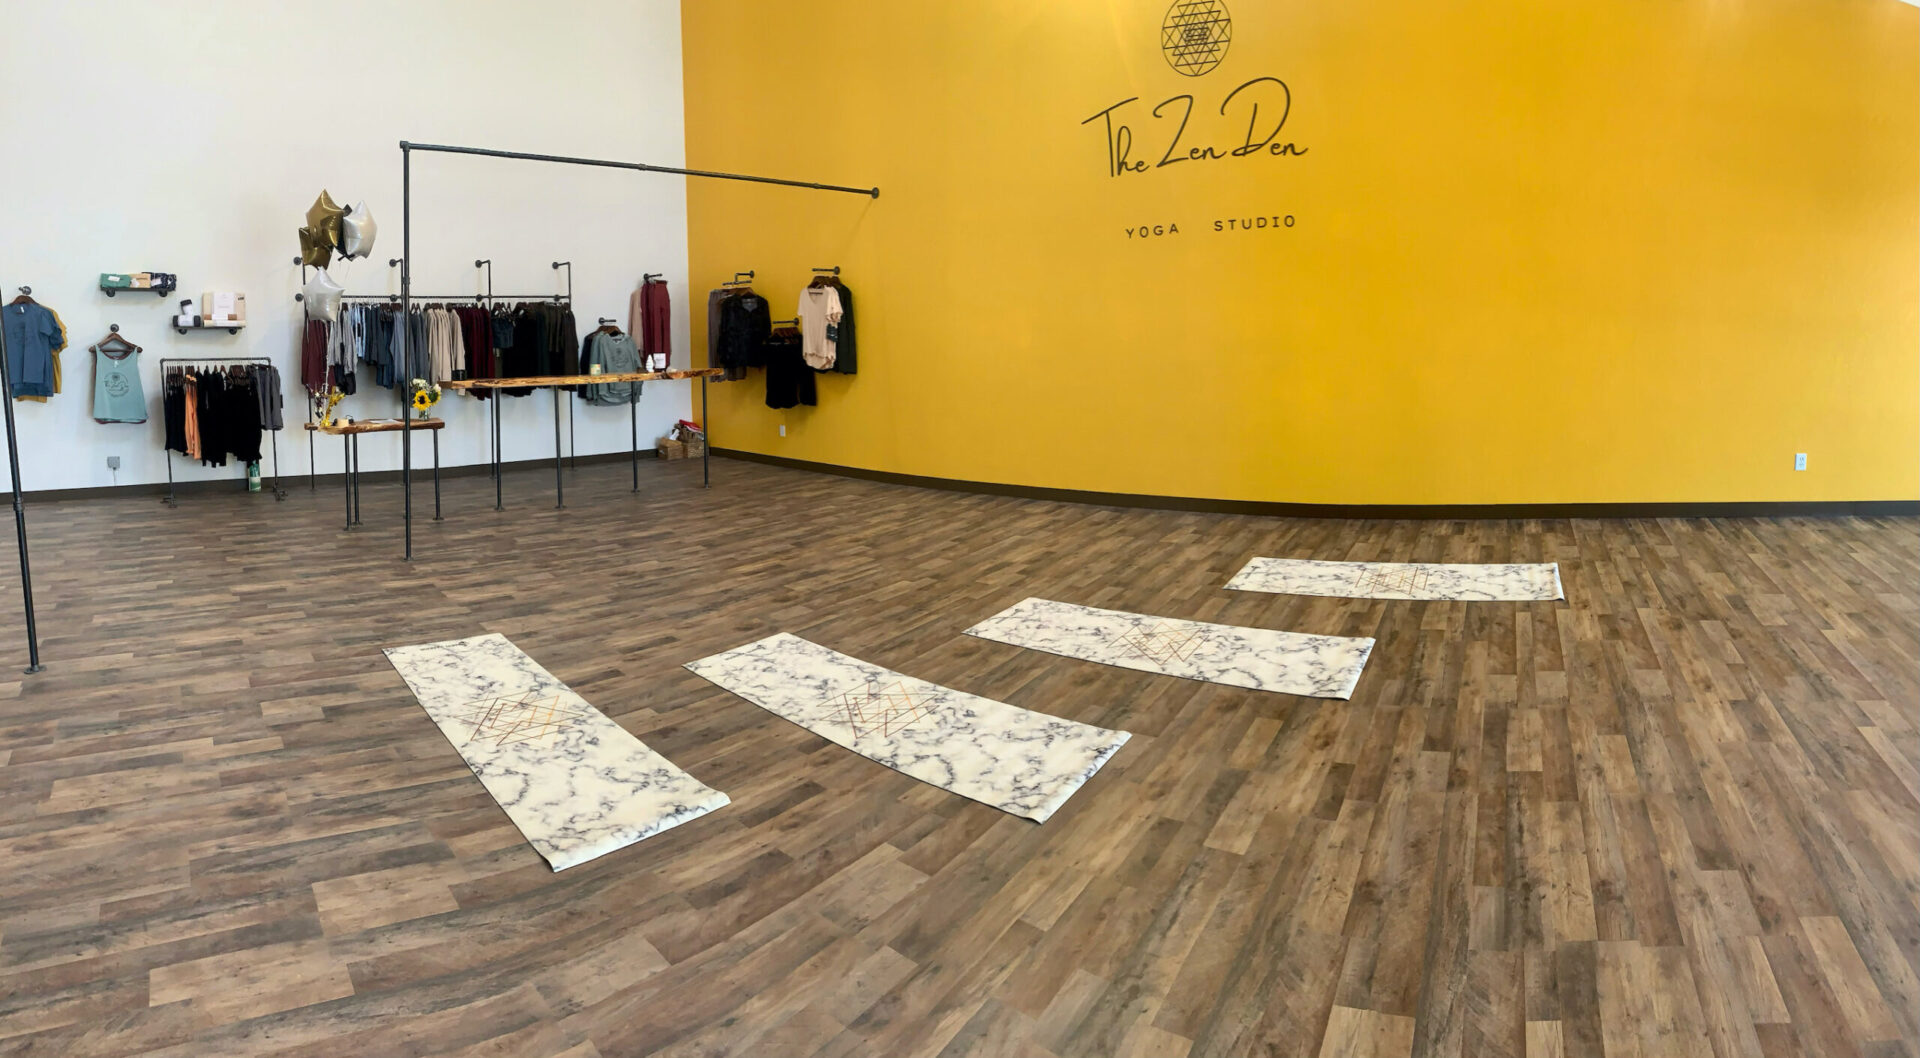 Yoga, Zen Den Studio